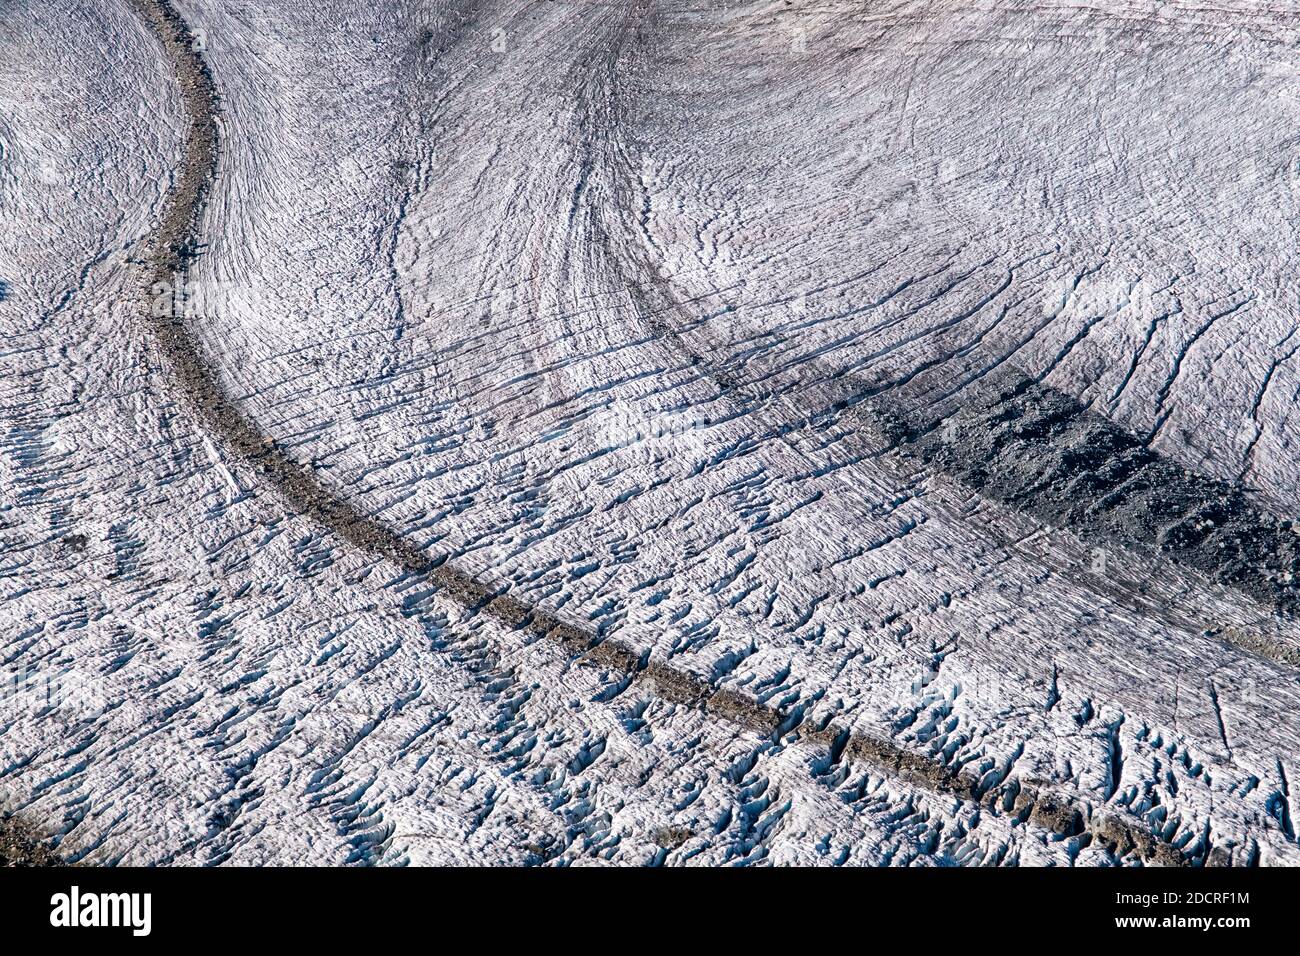 Vista aérea sobre el glaciar pers desde la cumbre de Piz Trovat cerca de Diavolezza. Foto de stock